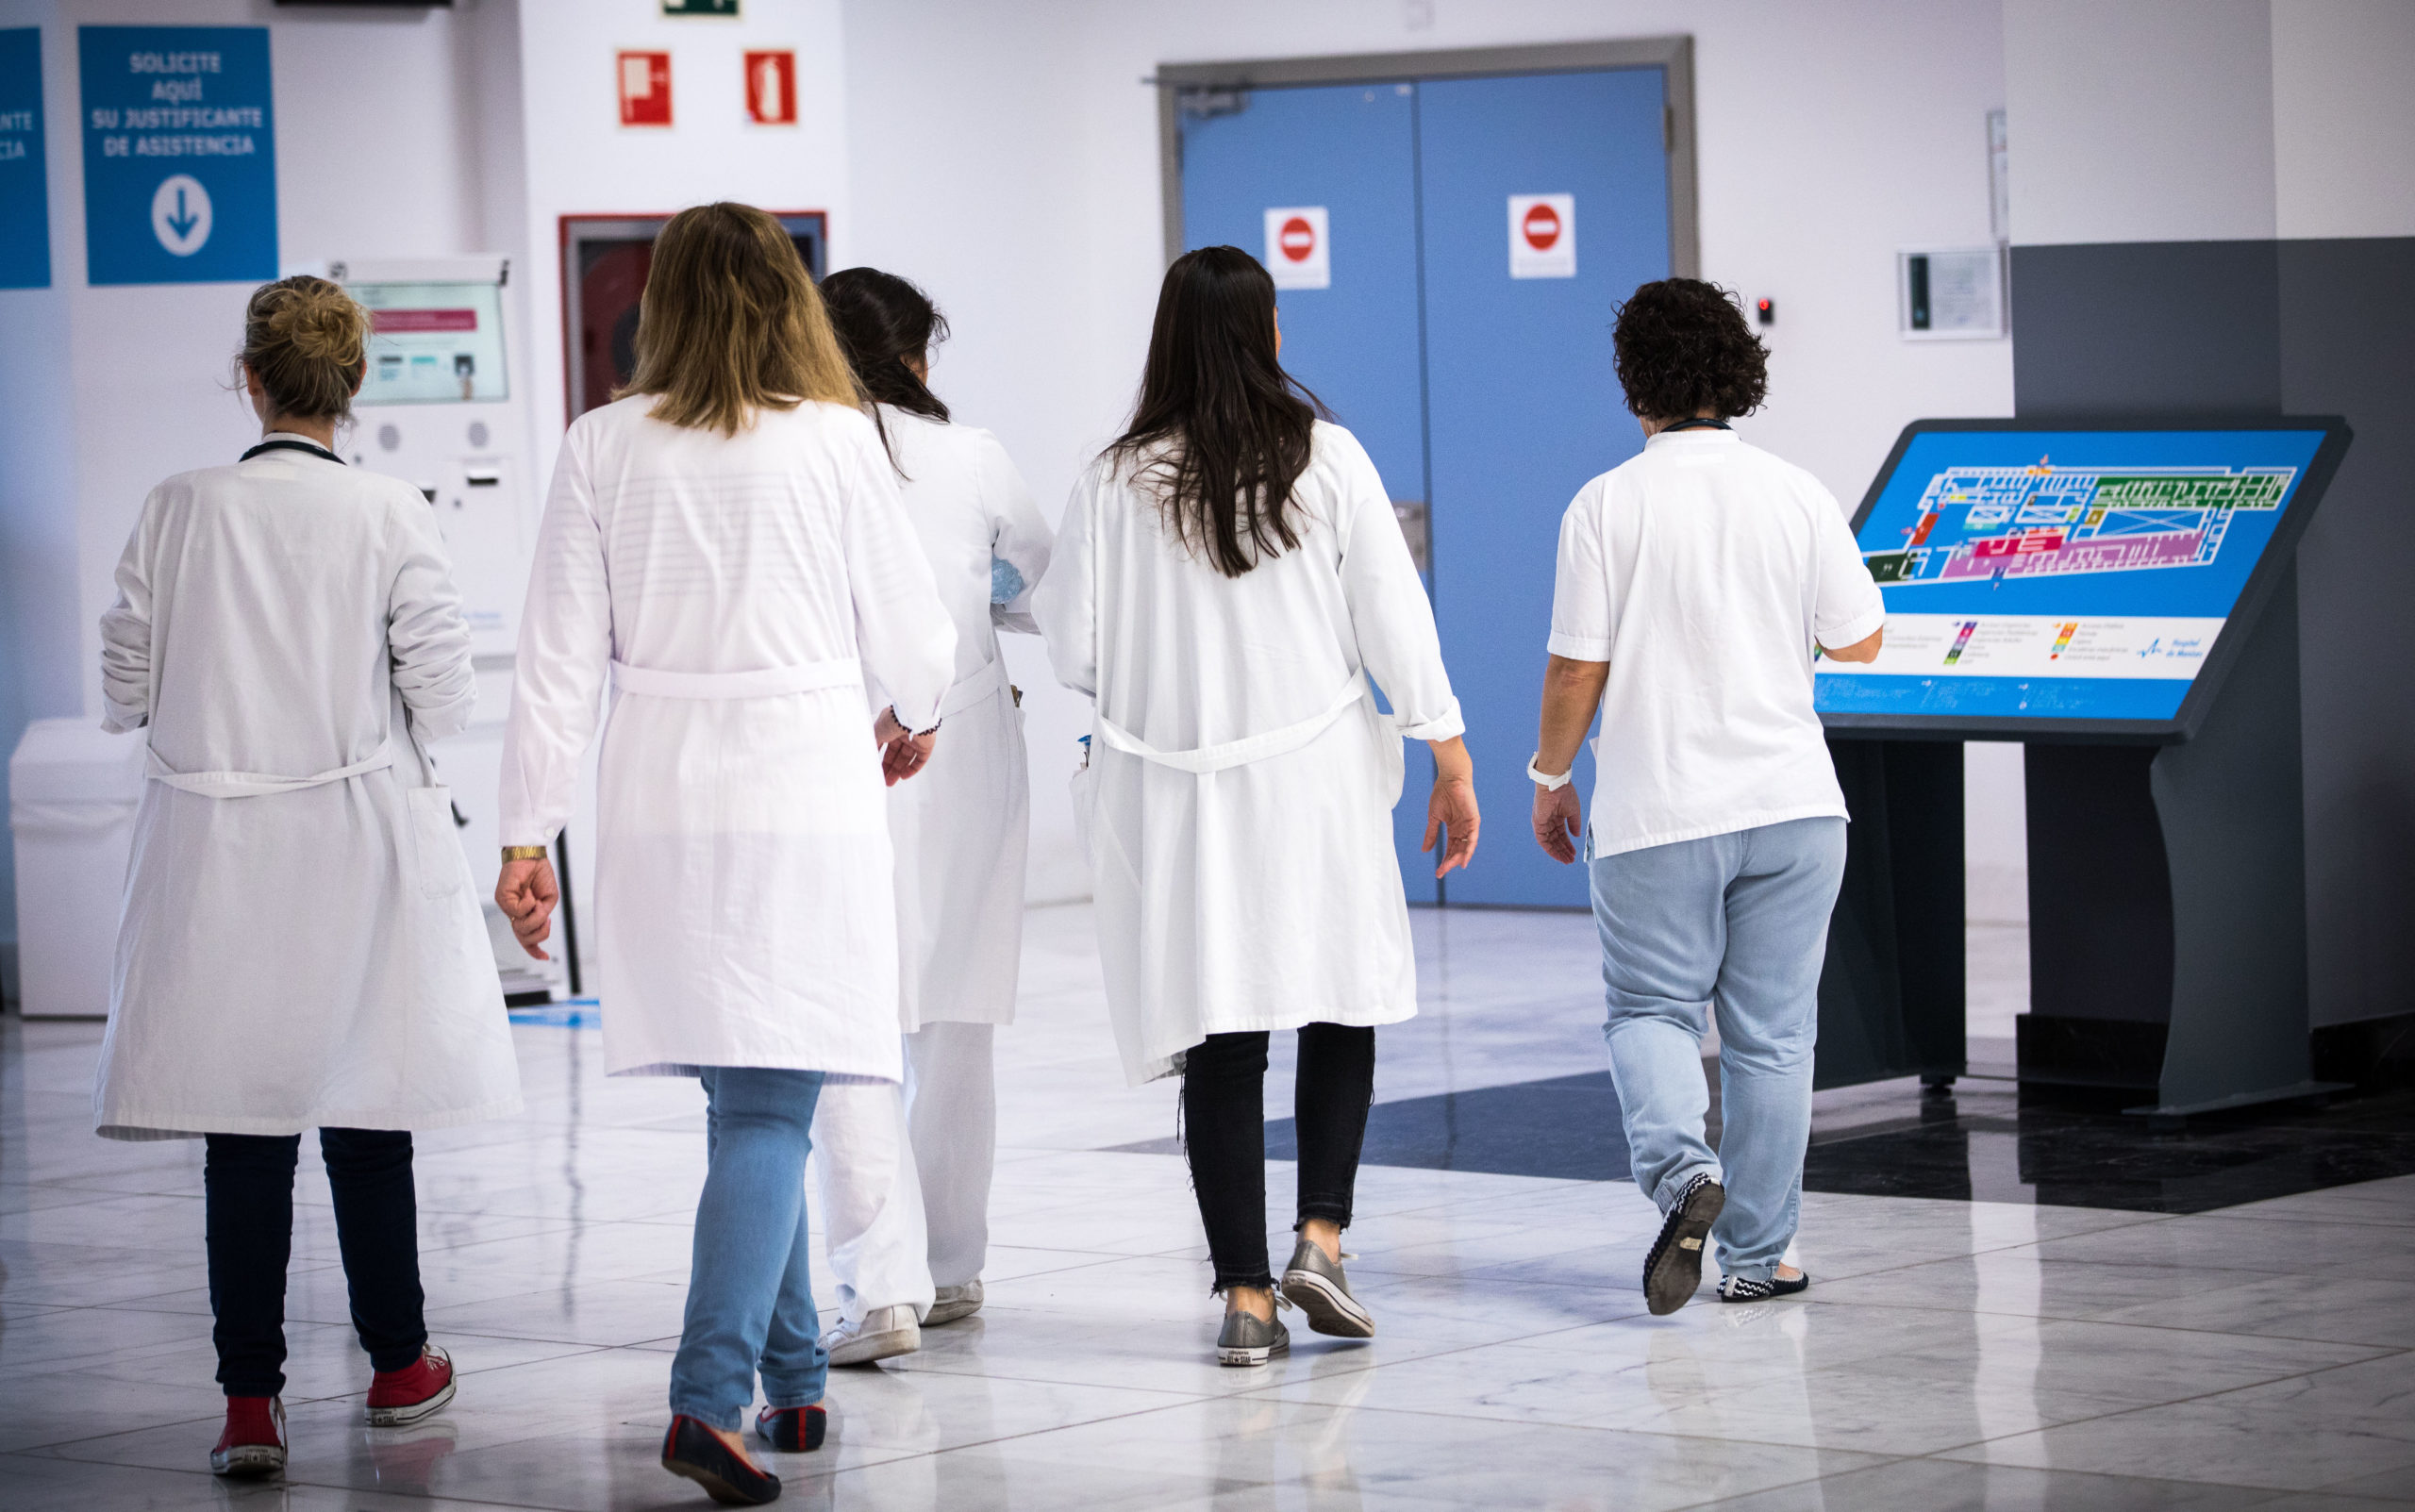 La Comunitat Valenciana ha registrado 1.606 casos confirmados por prueba PCR o a través de test de antígenos, que sitúan la cifra total de positivos en 58.596 personas